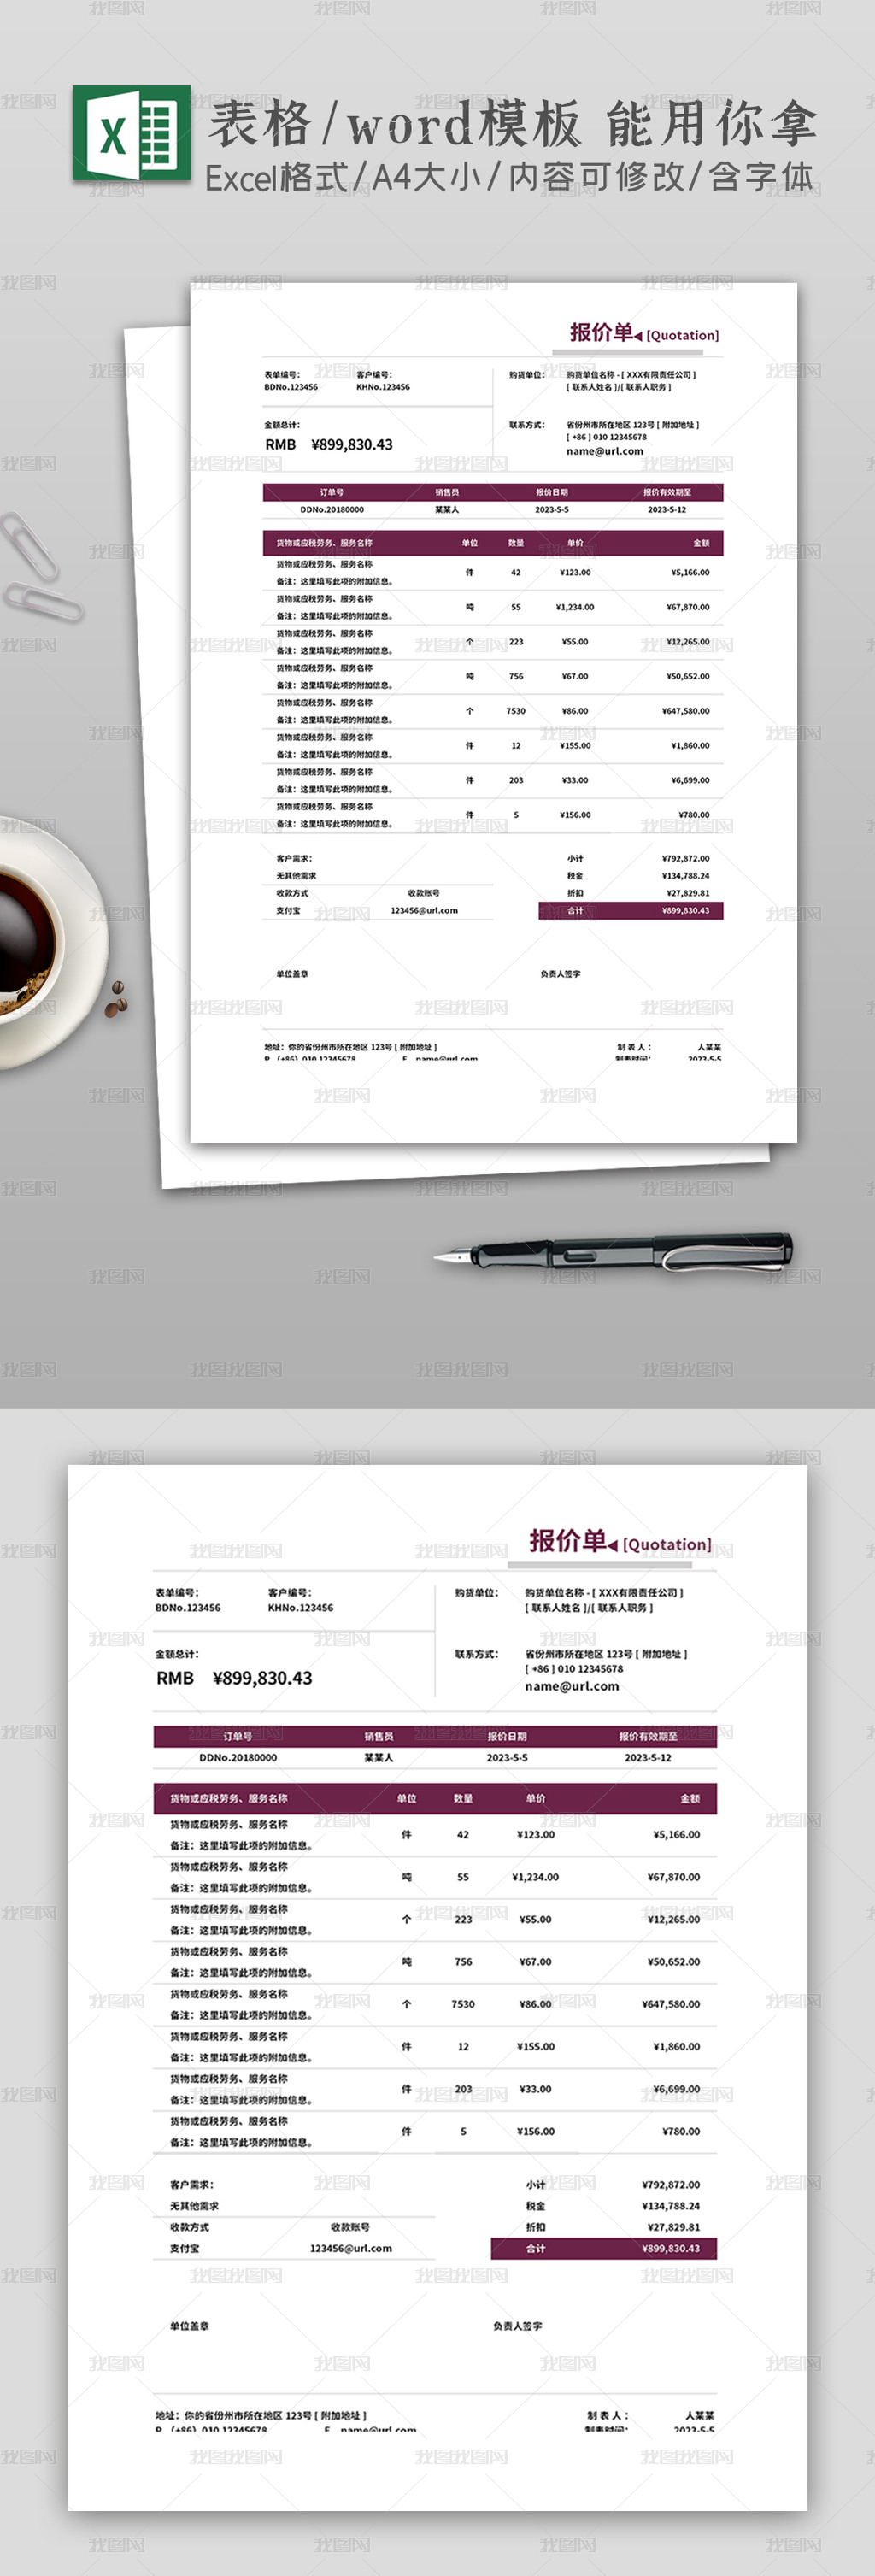 紫色商務企業通用報價單Excel報價模板